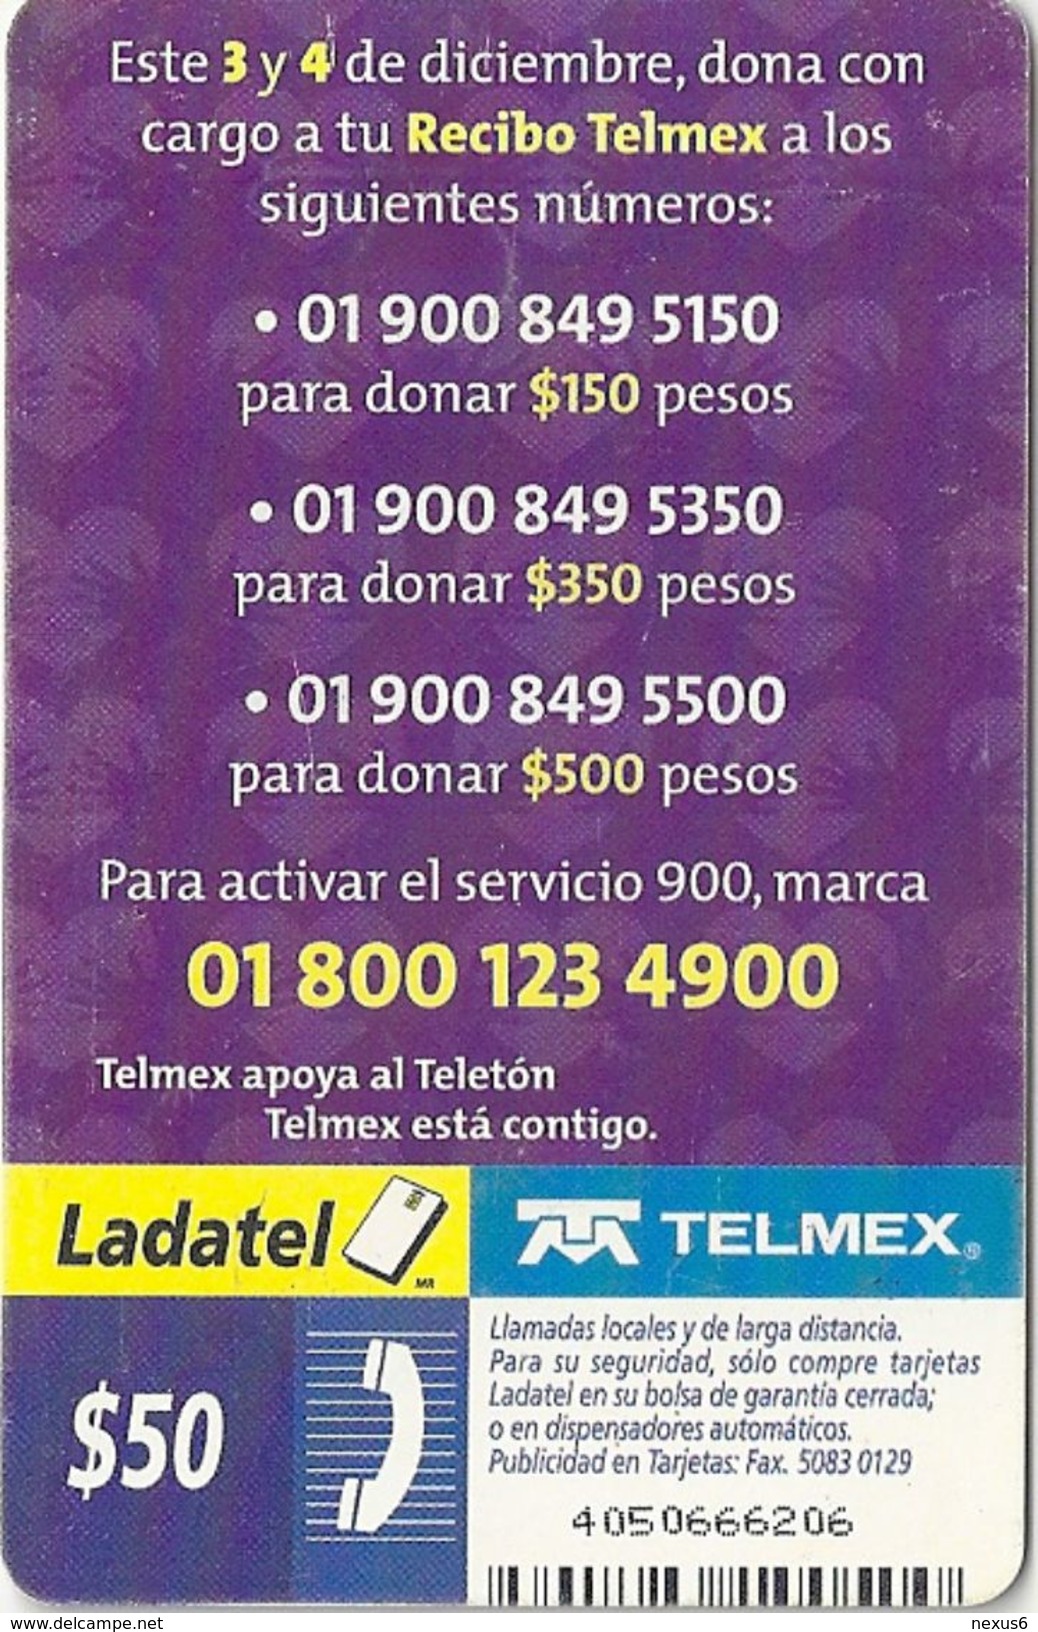 Mexico - Ladatel - TELETON 2004 Unidos Por El Amor - P-1429 - 50$, 10.2004, Used - Mexico